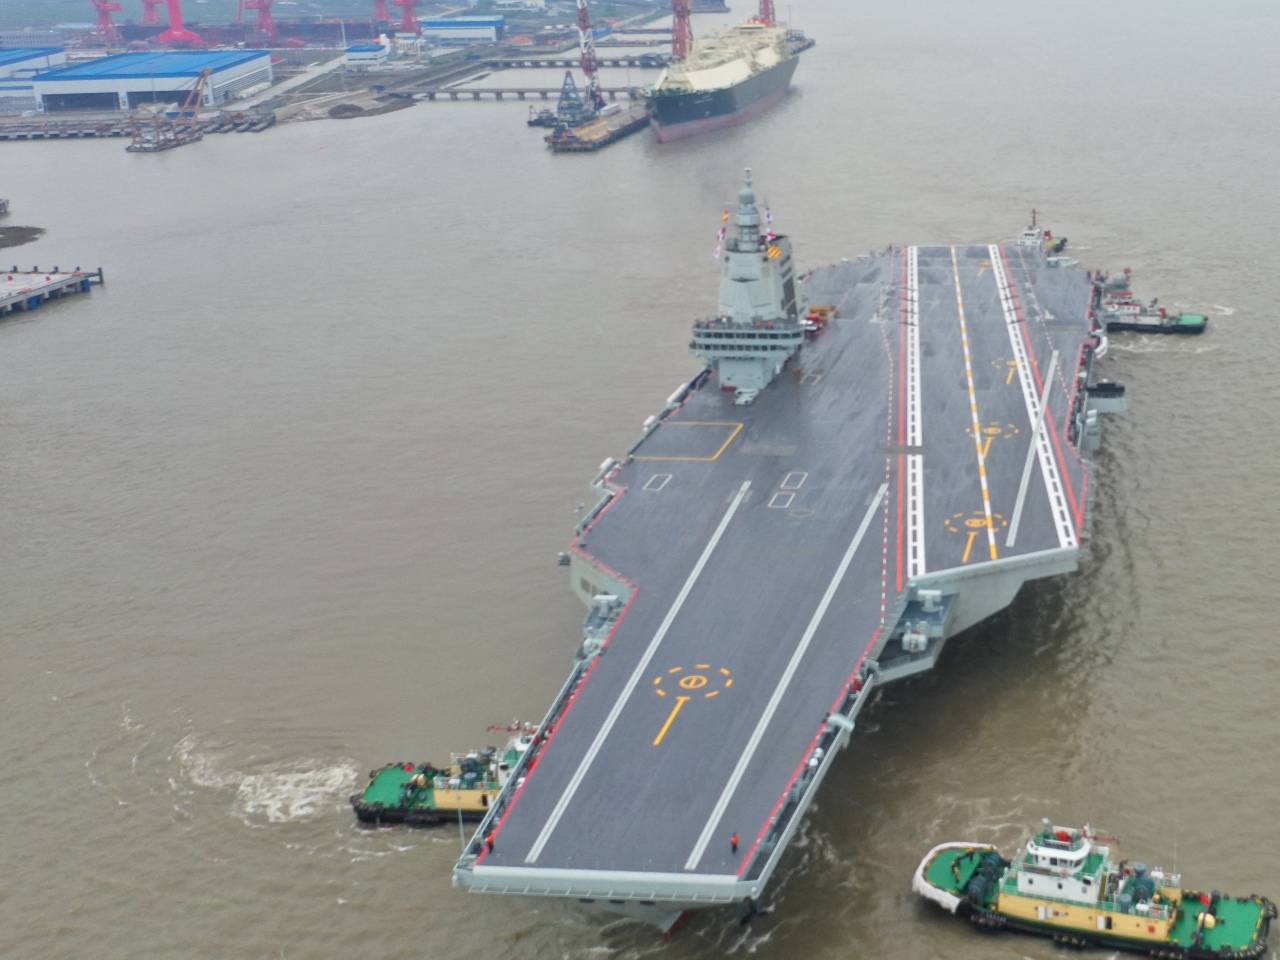 中國航艦福建號展開海試 專家估最快2026年服役